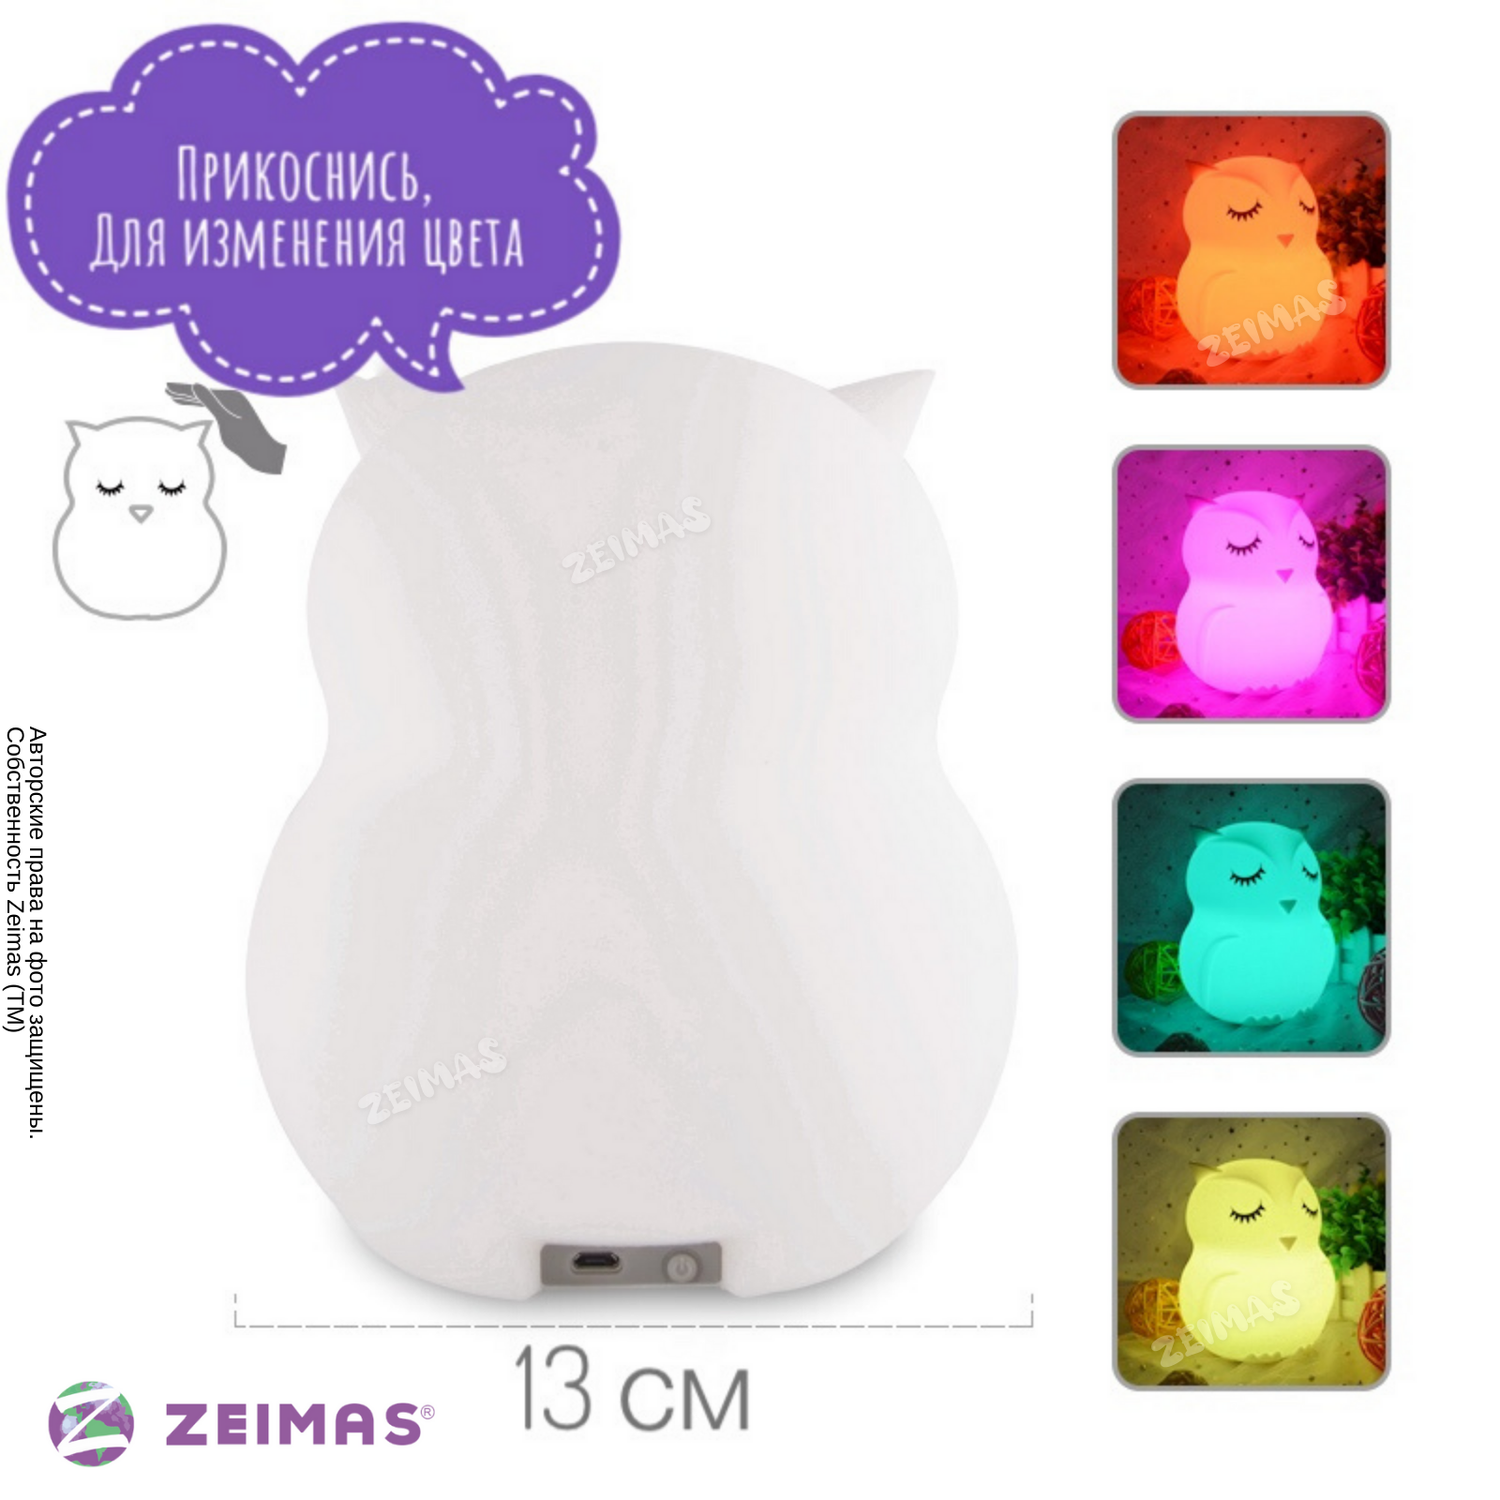 Ночник детский силиконовый Zeimas светильник игрушка развивающая Сова с пультом 9 цветов большой размер - фото 4